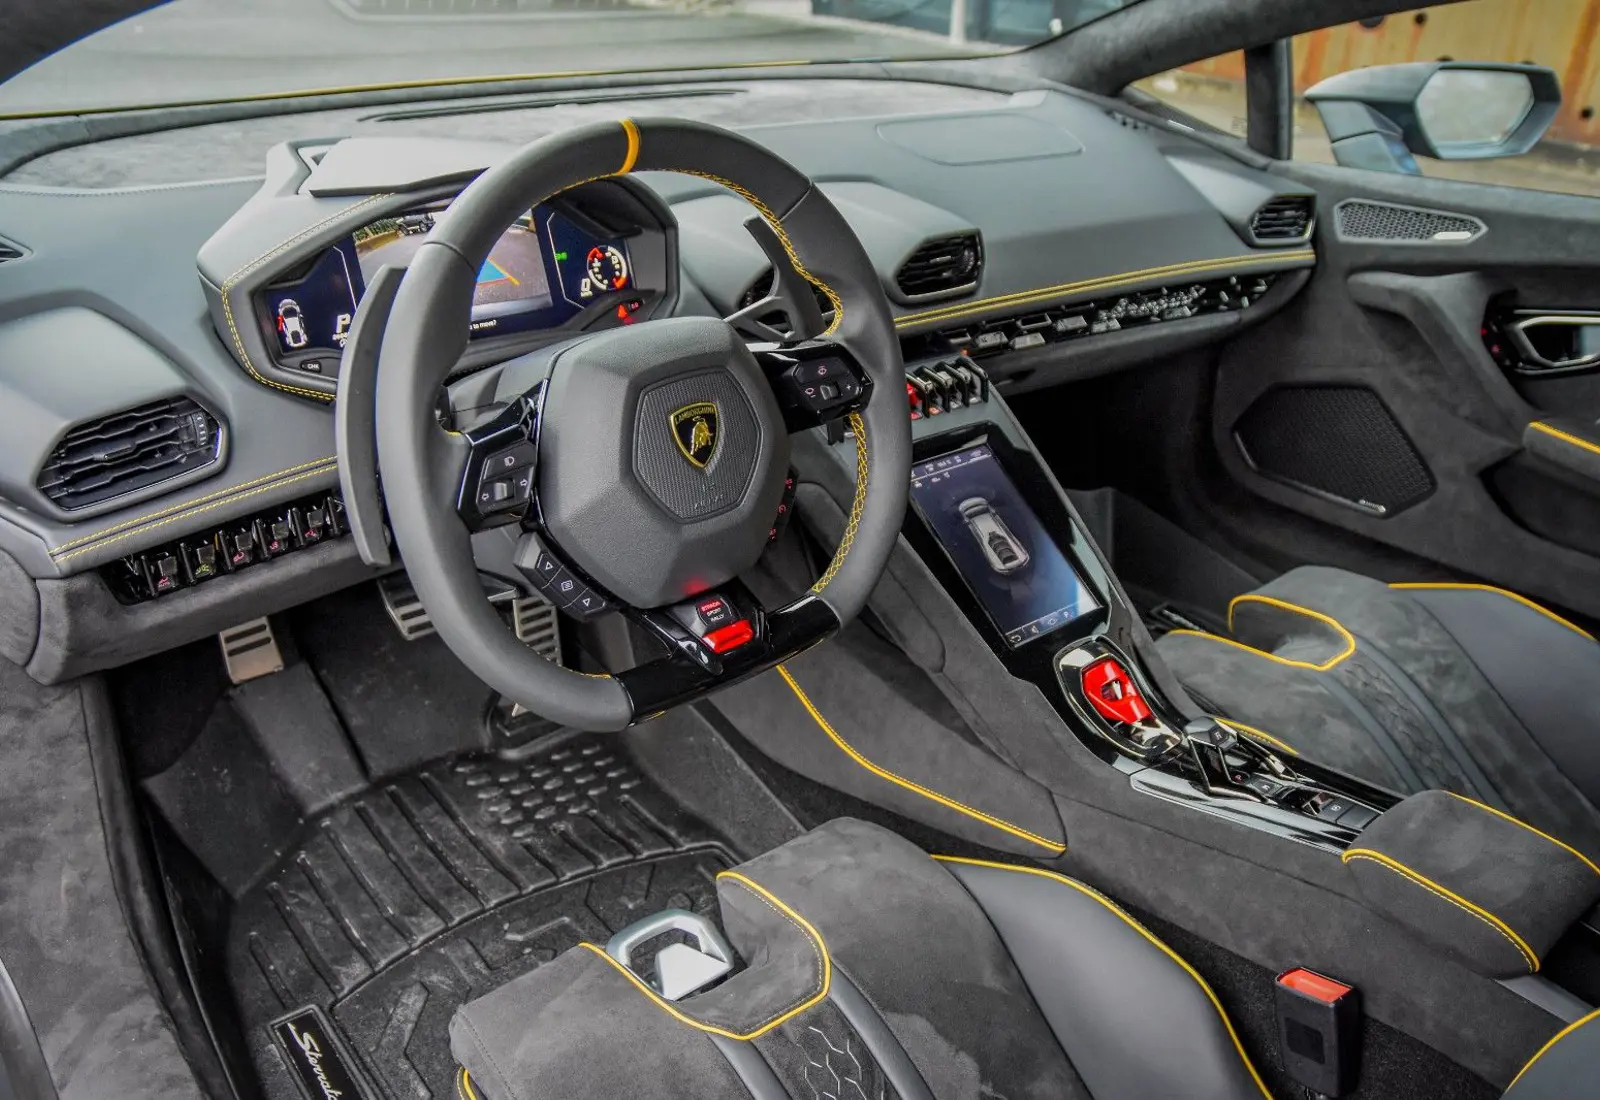 Lamborghini Huracán Sterrato * 1/1499 * CARBON SEATS * ROOF RACK *  - 49521